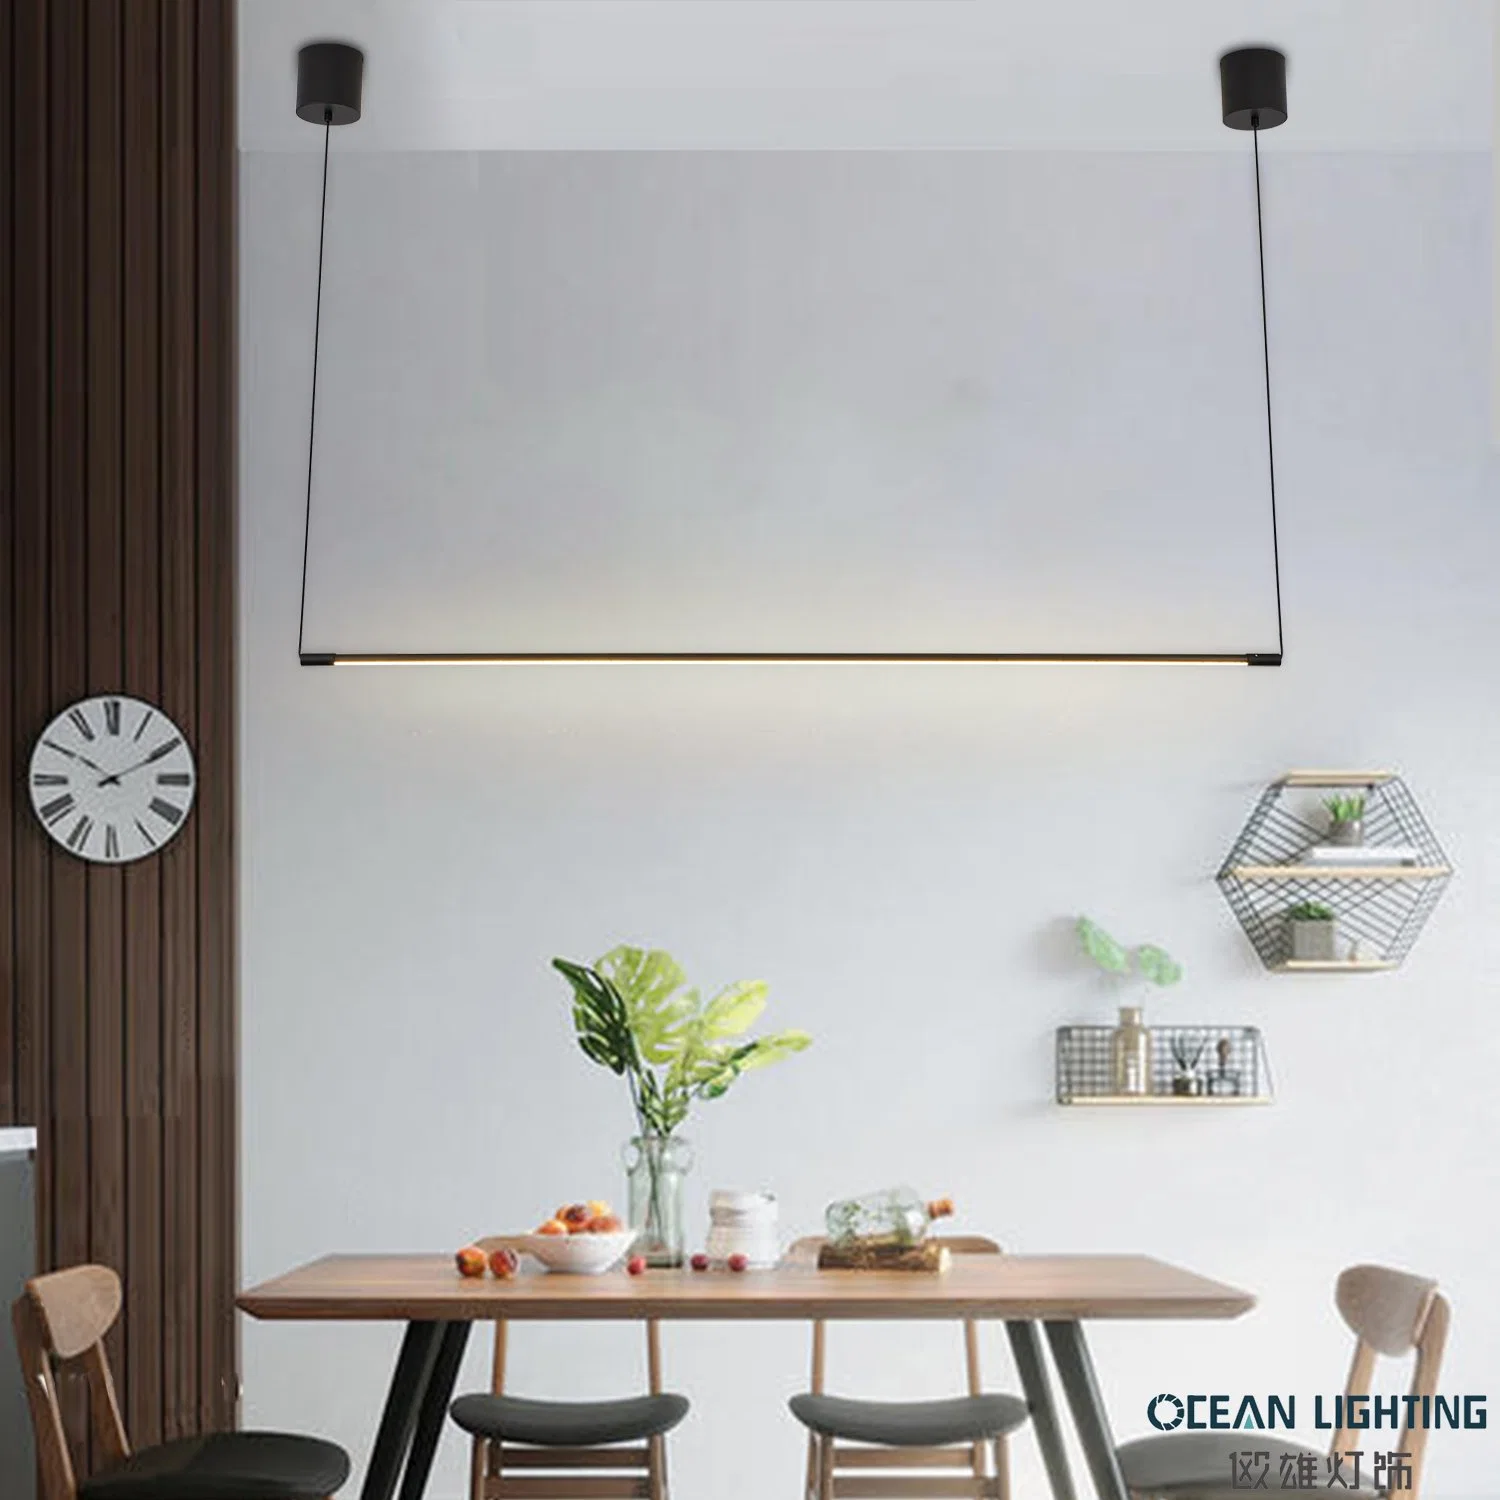 Lampe suspendue Ocean Lighting de luxe à design moderne et simple avec puce LED.